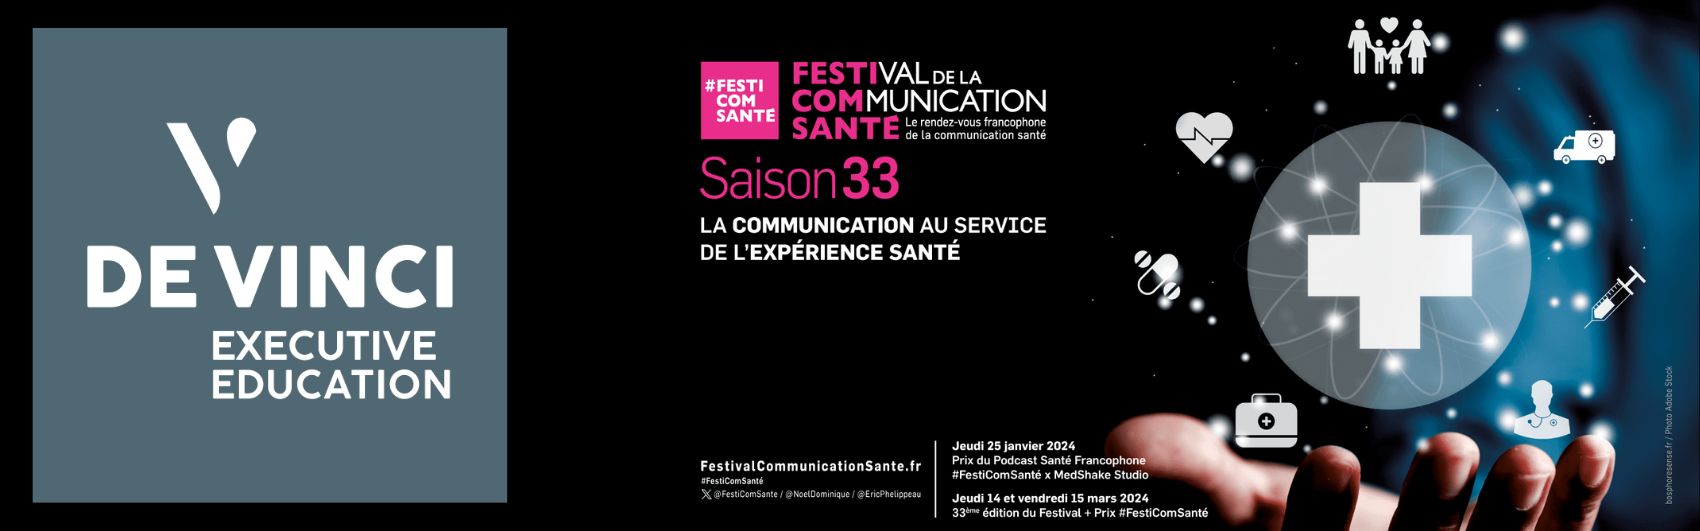 Article Festival de la Communication Santé #FestiComSanté